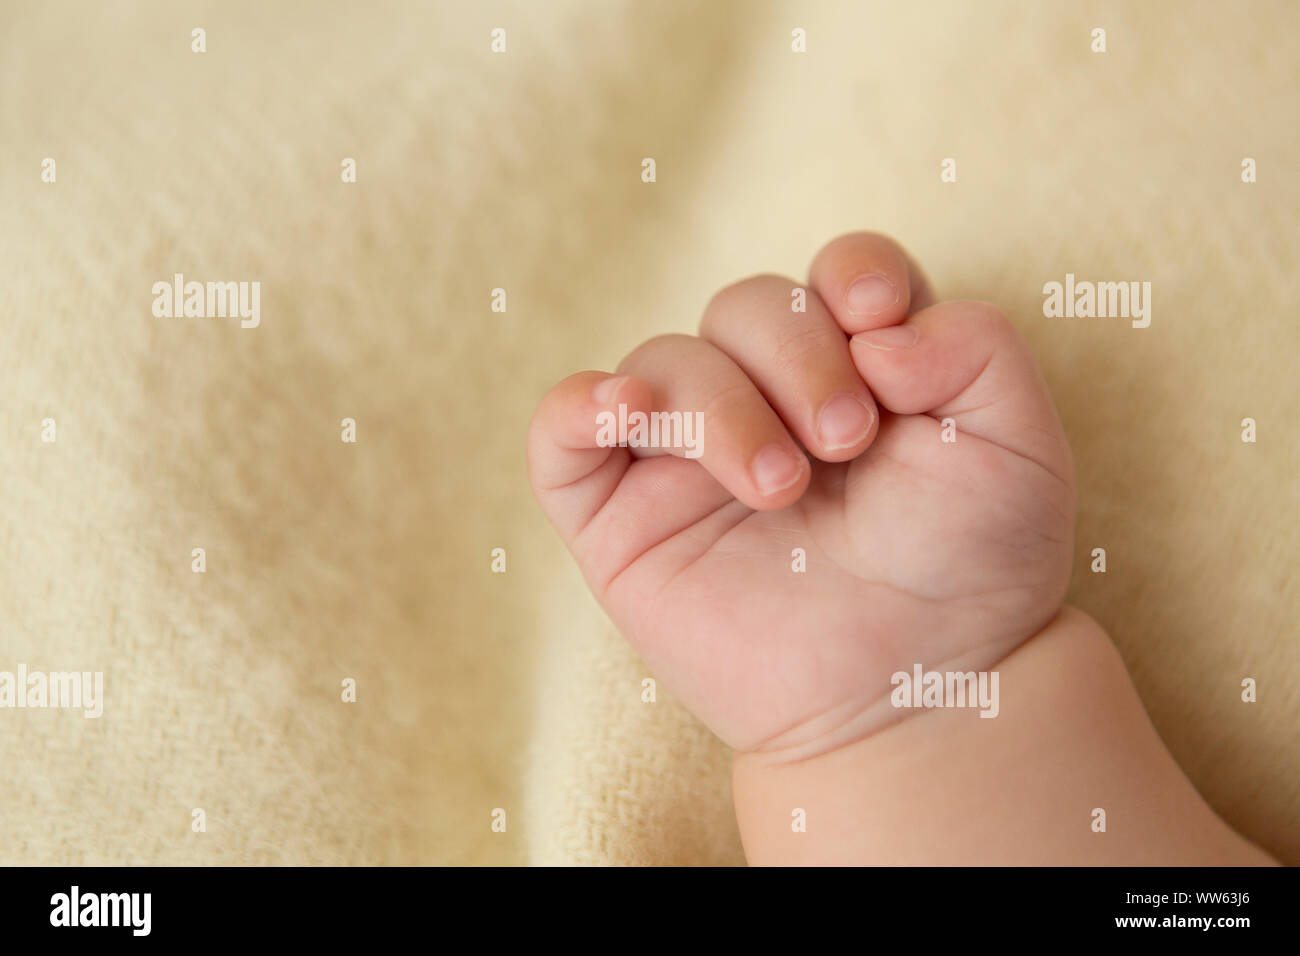 La main de bébé, détail Banque D'Images